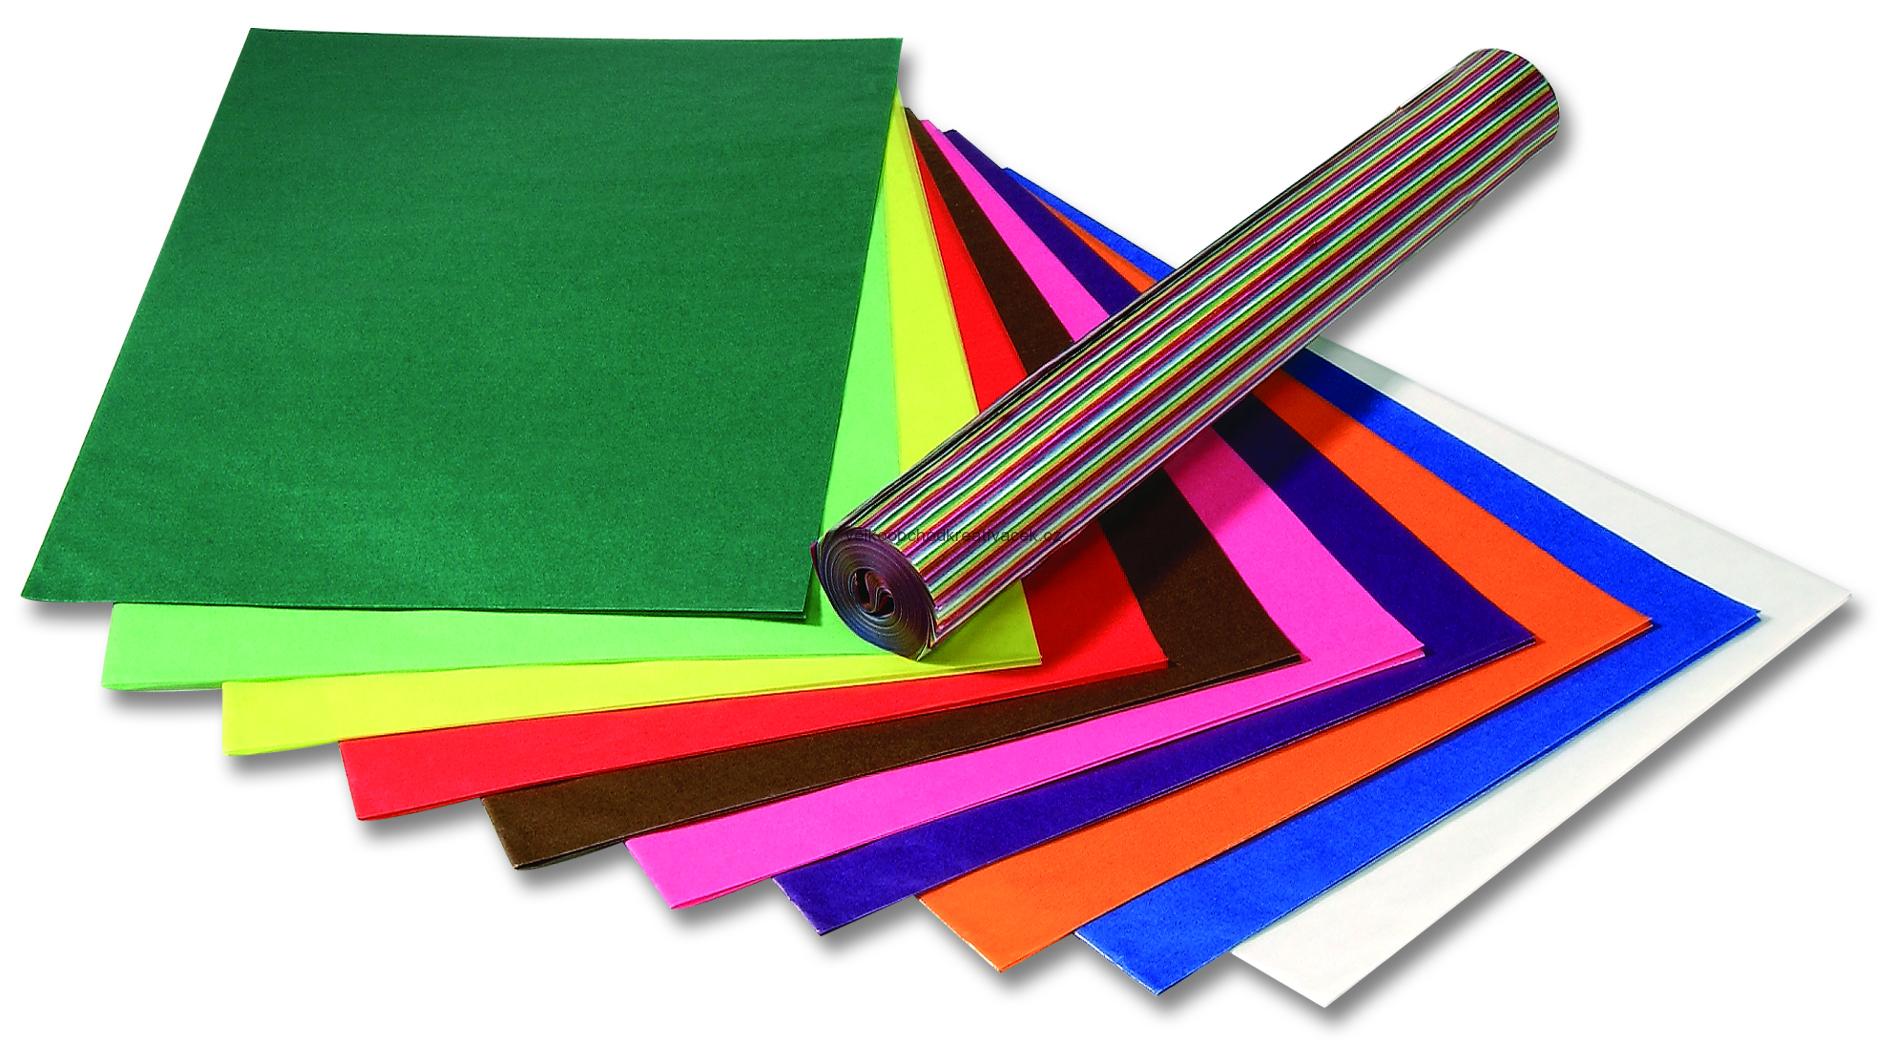 Transparent papír - 42 g/m2 - 25 listů v 10ti barvách